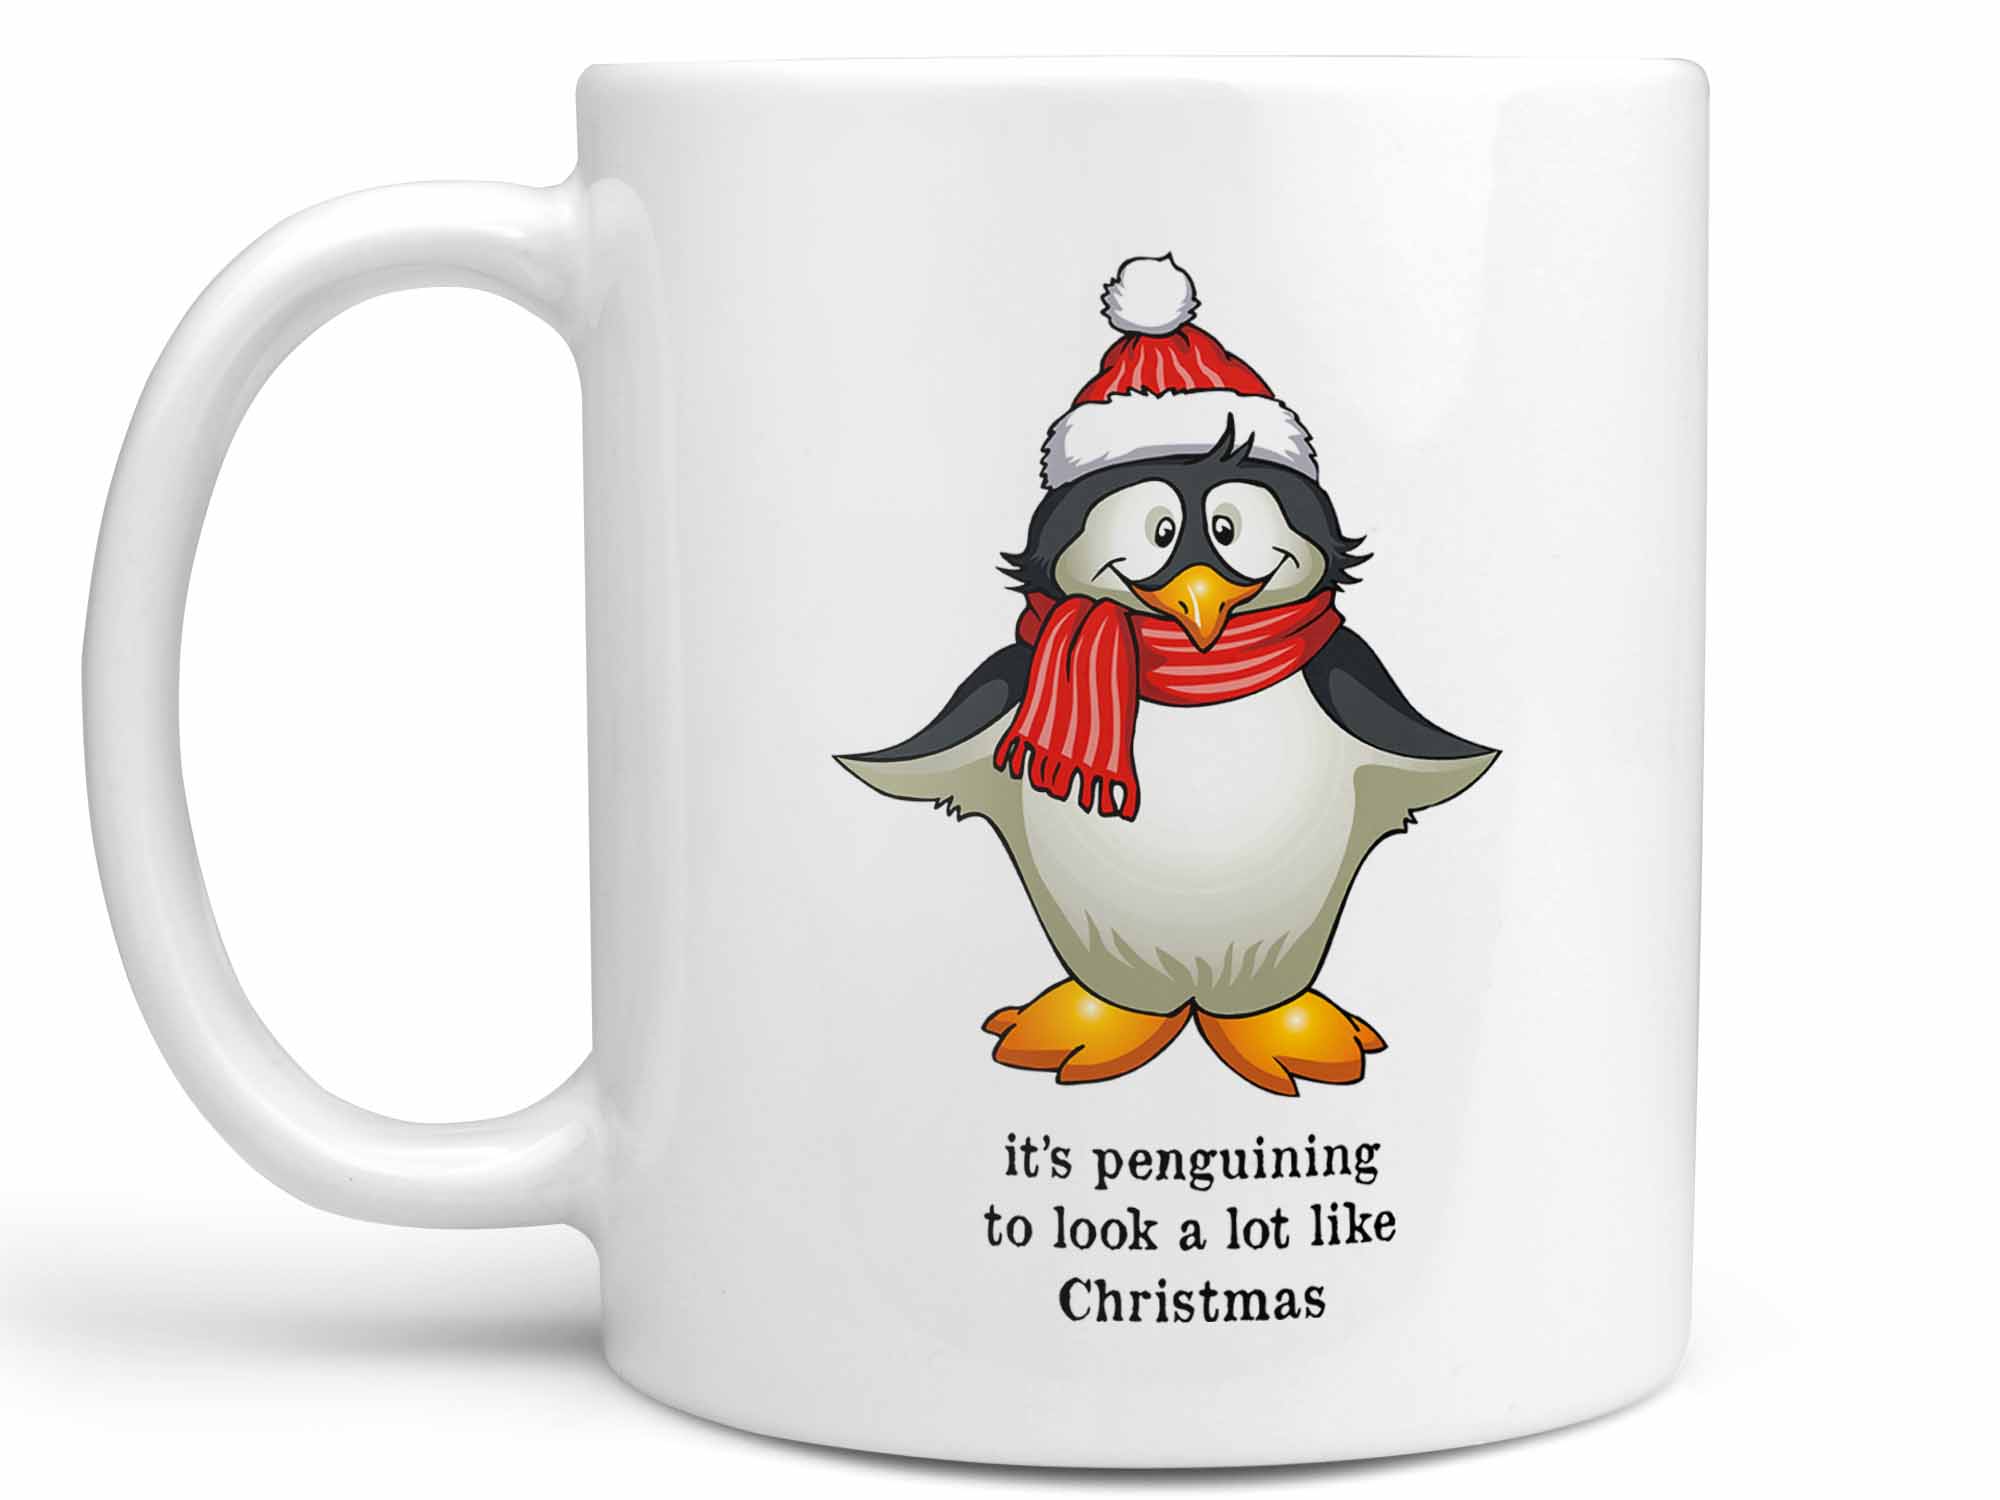 Penguin Christmas Coffee Mug